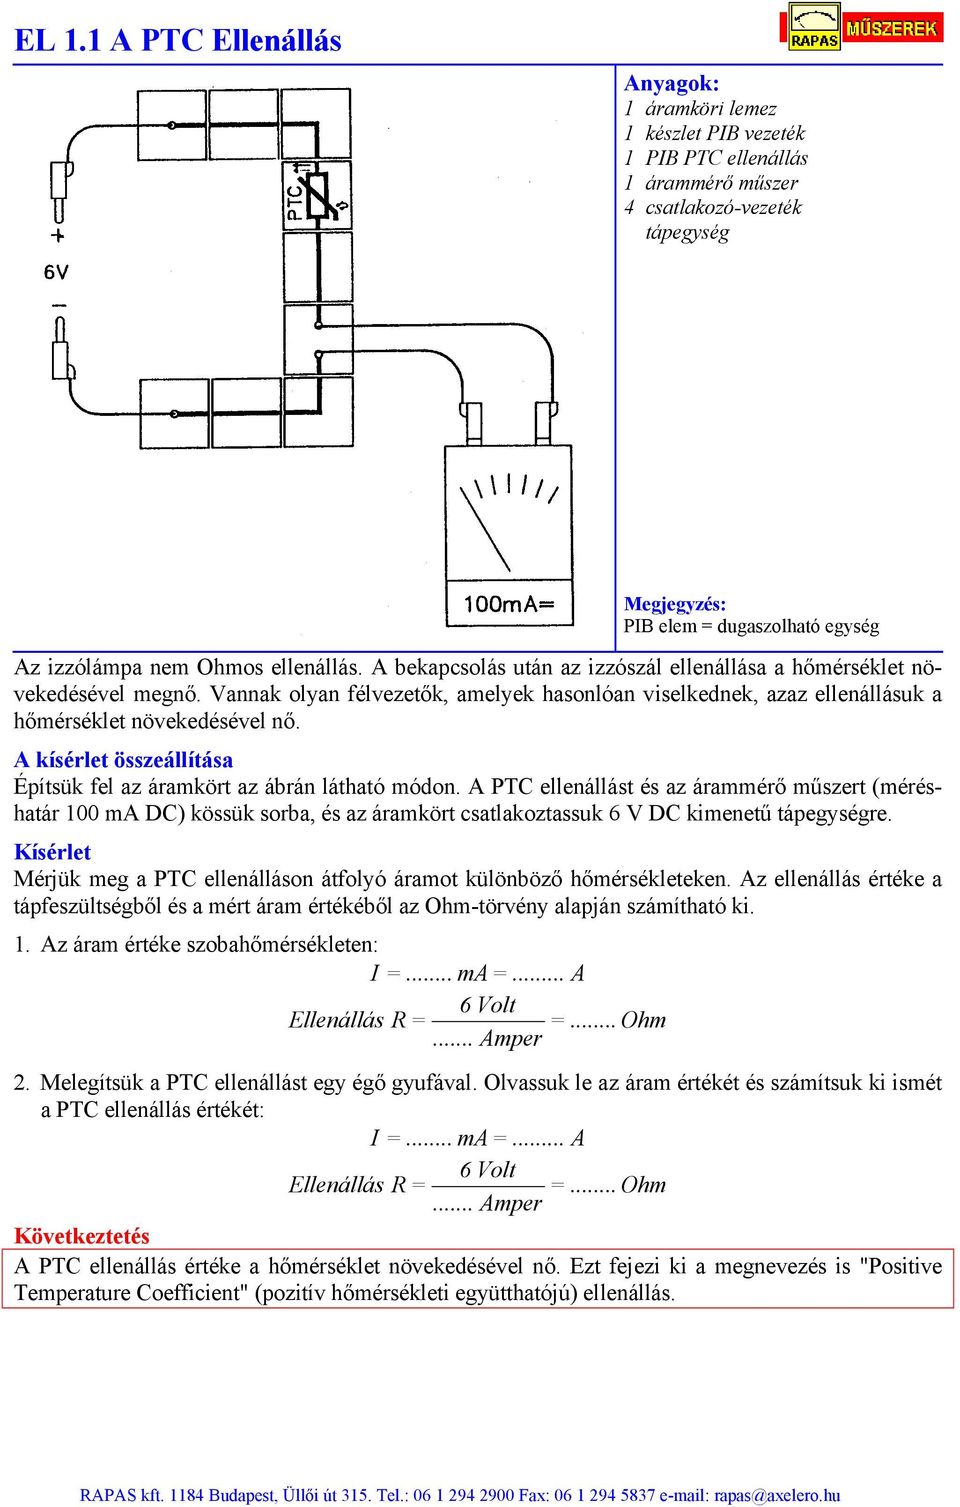 EL 1.1 A PTC Ellenállás - PDF Ingyenes letöltés